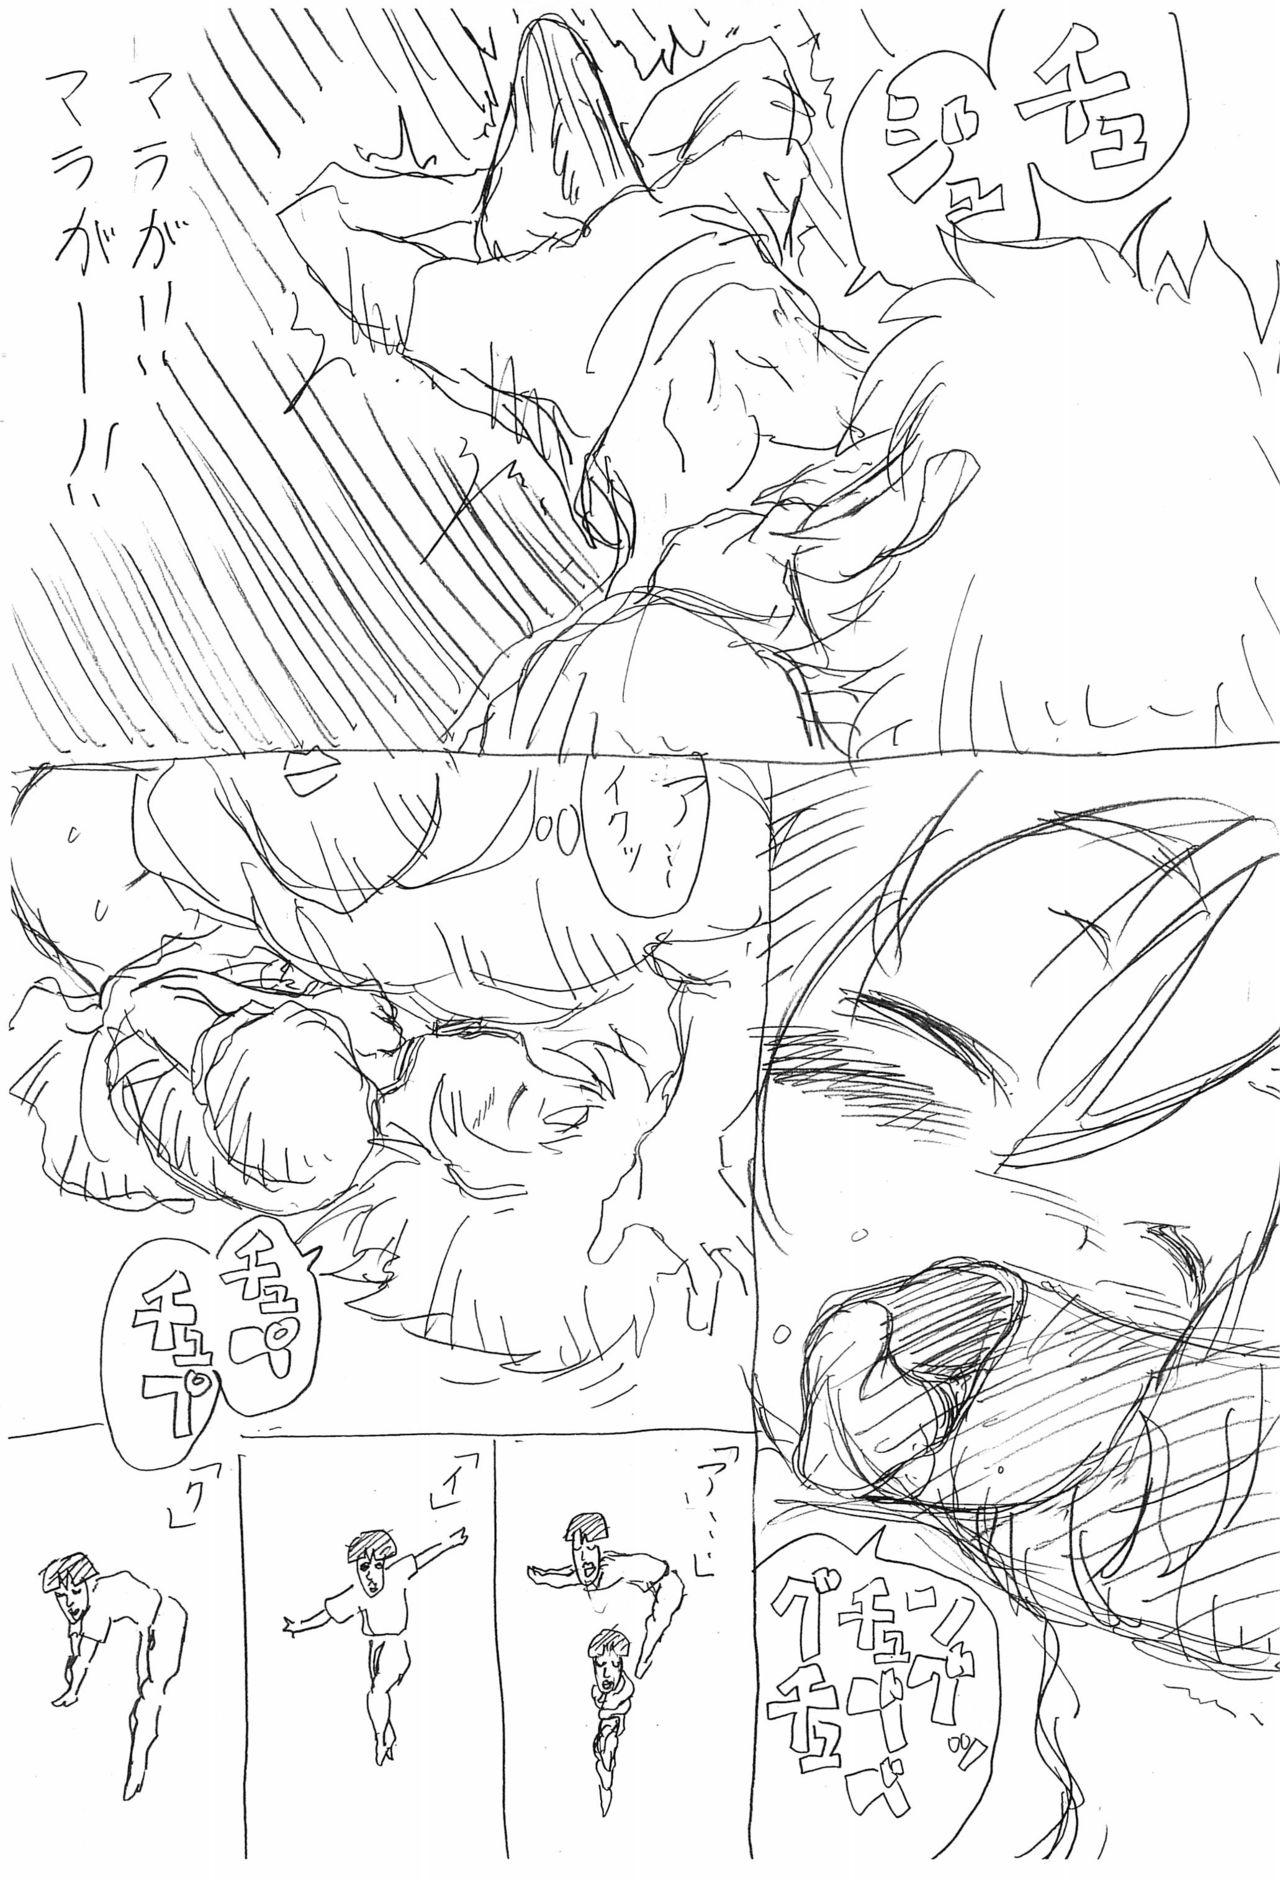 Bukkake Mara no Ue no Ponyo - Ponyo Body Massage - Page 8